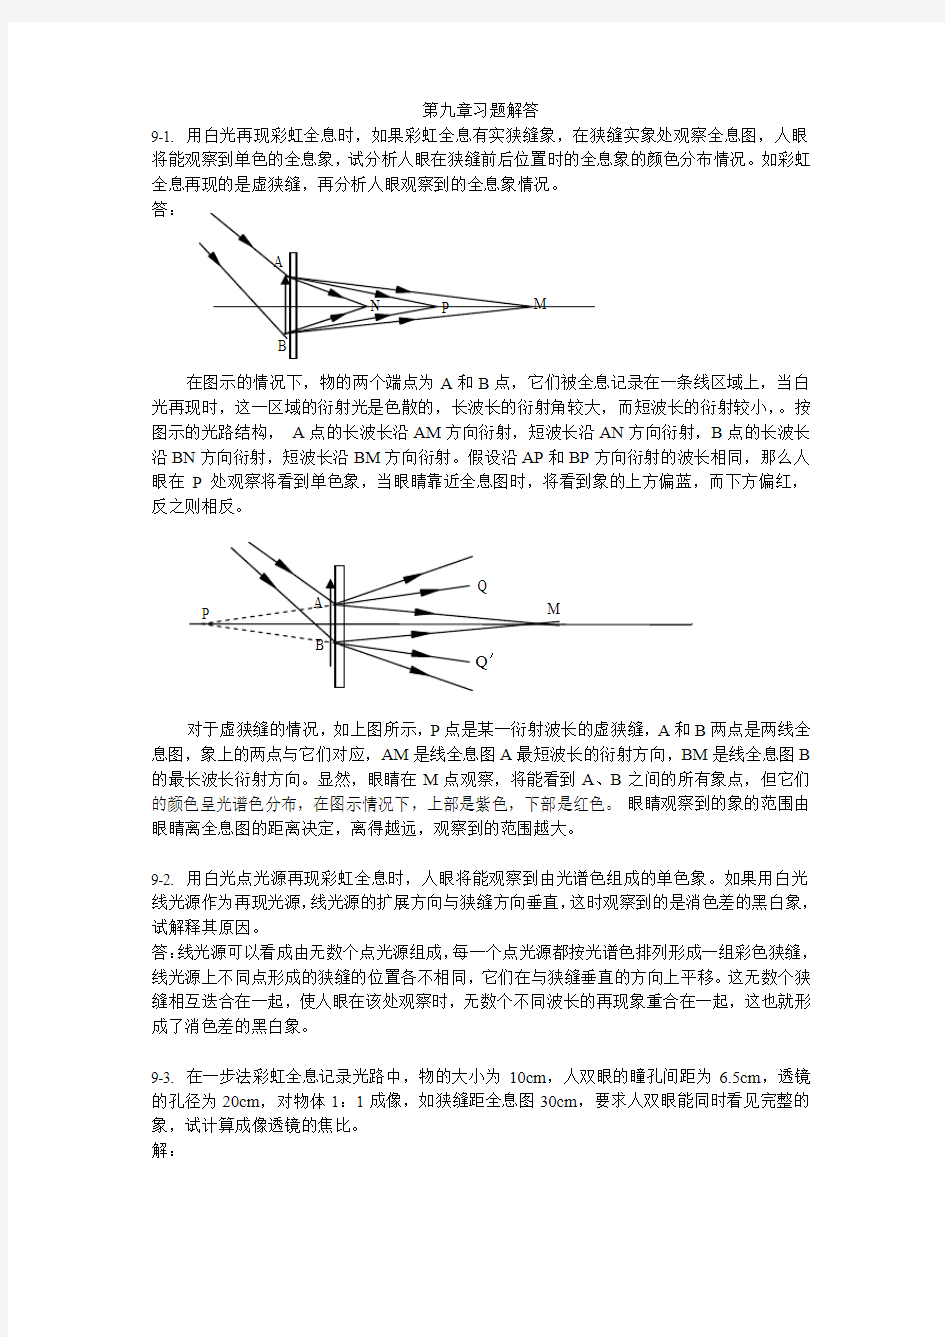 陈家璧版 光学信息技术原理及应用习题解答(9-11章)